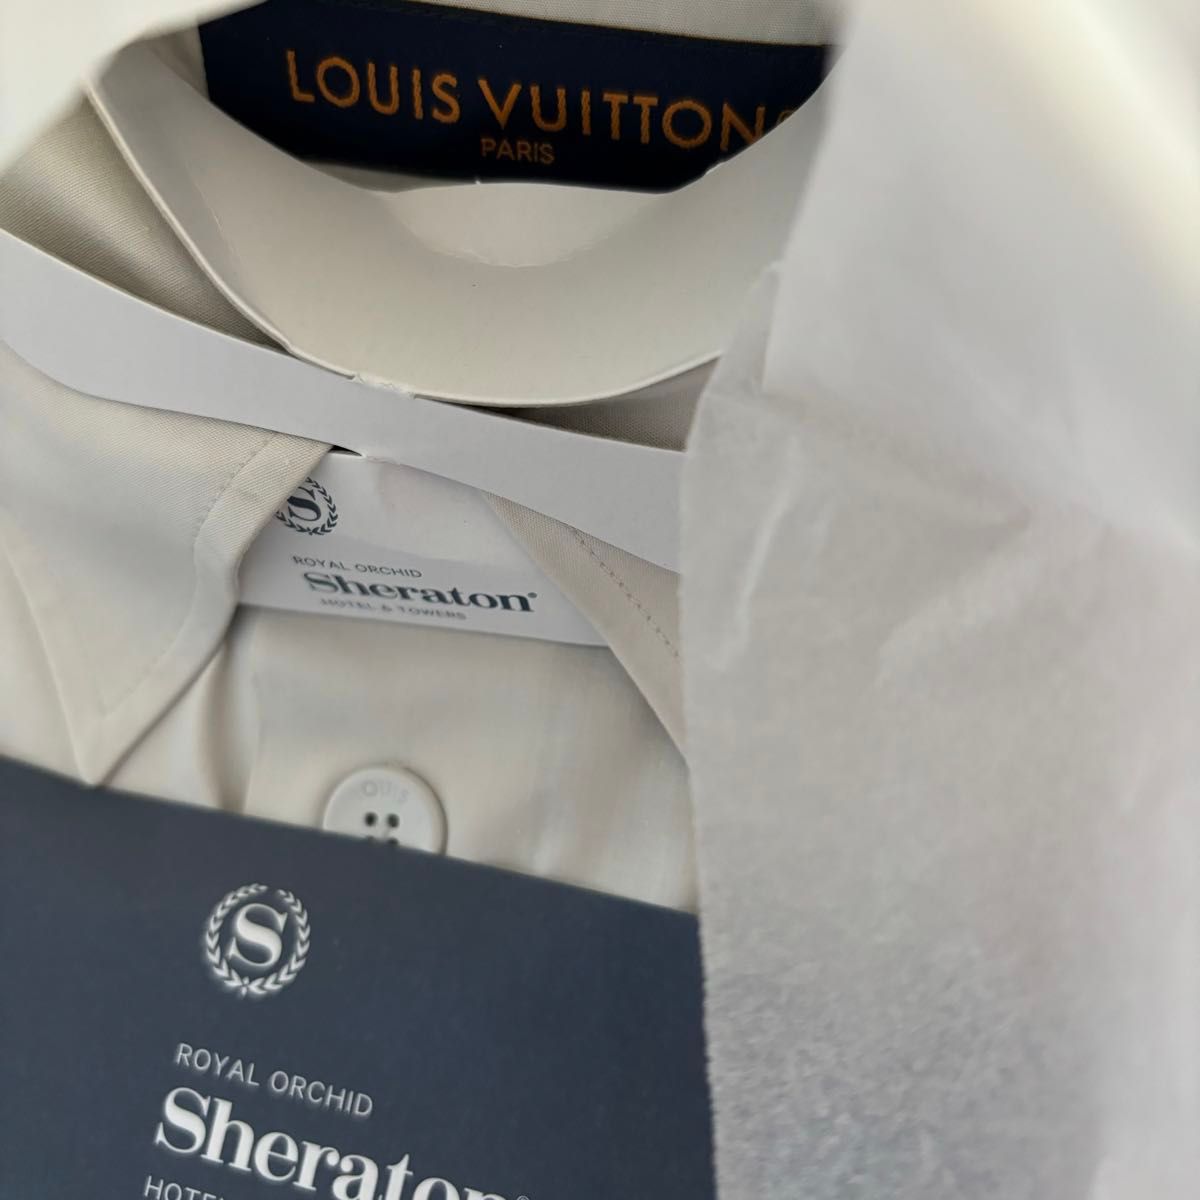 新作 海外 LOUIS VUITTON ルイヴィトン シャツ Sサイズ ホワイト 半袖 シャツ